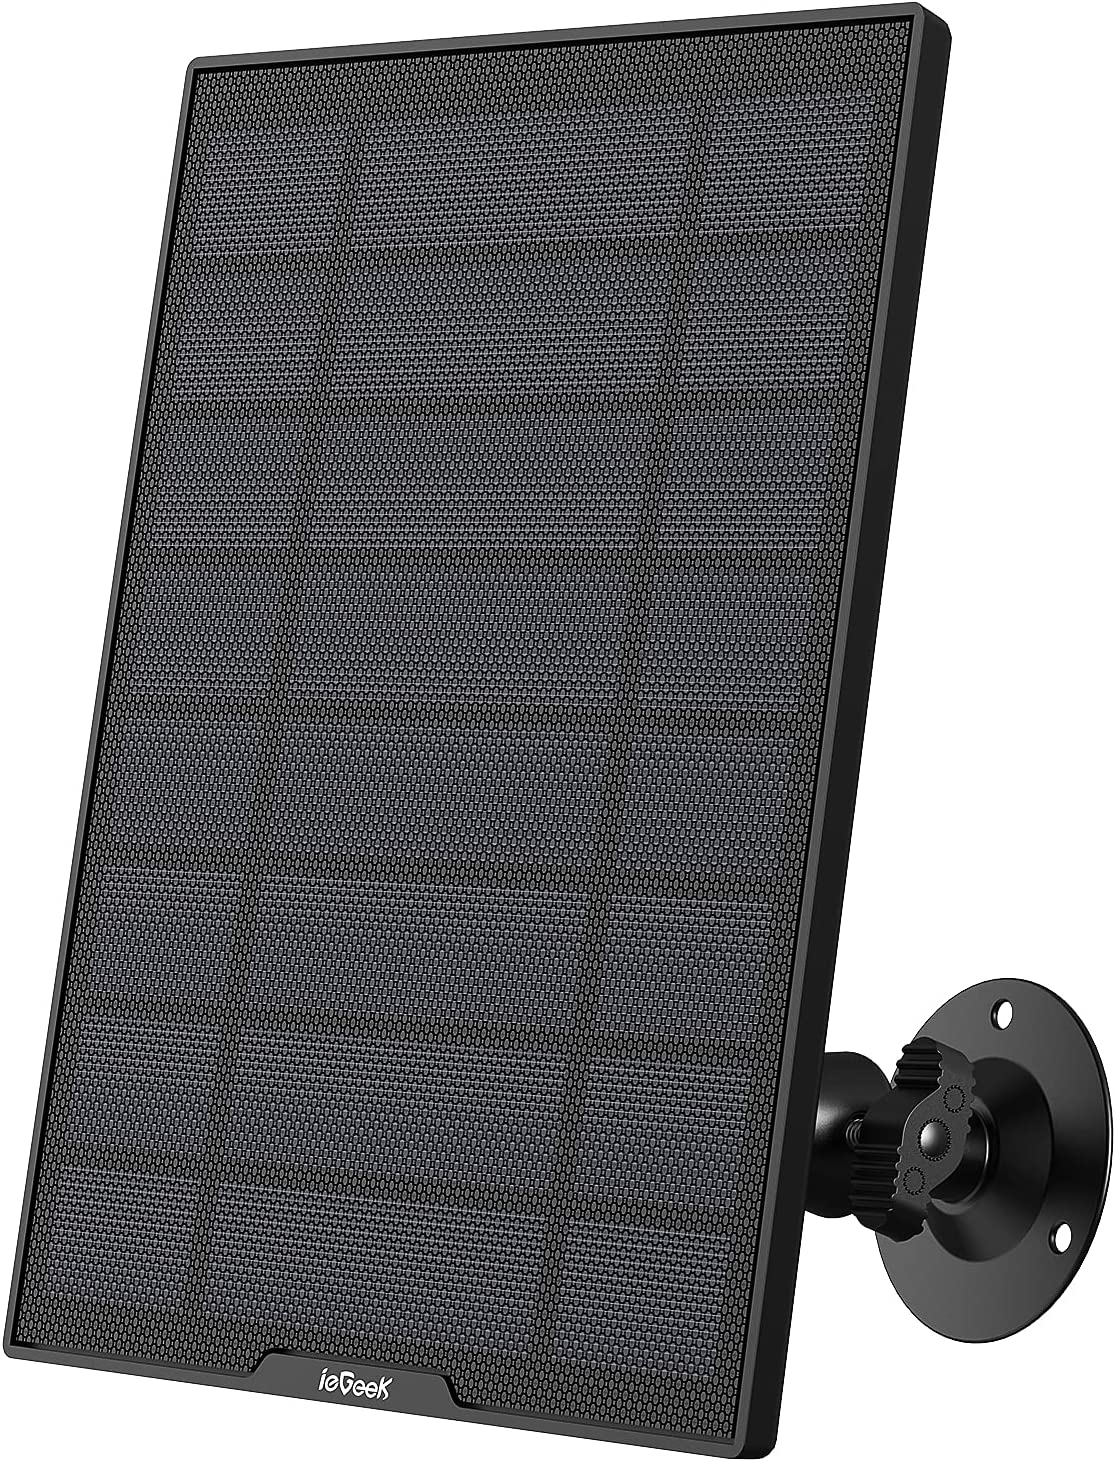 Pannello Solare per Telecamera Interno / Esterno